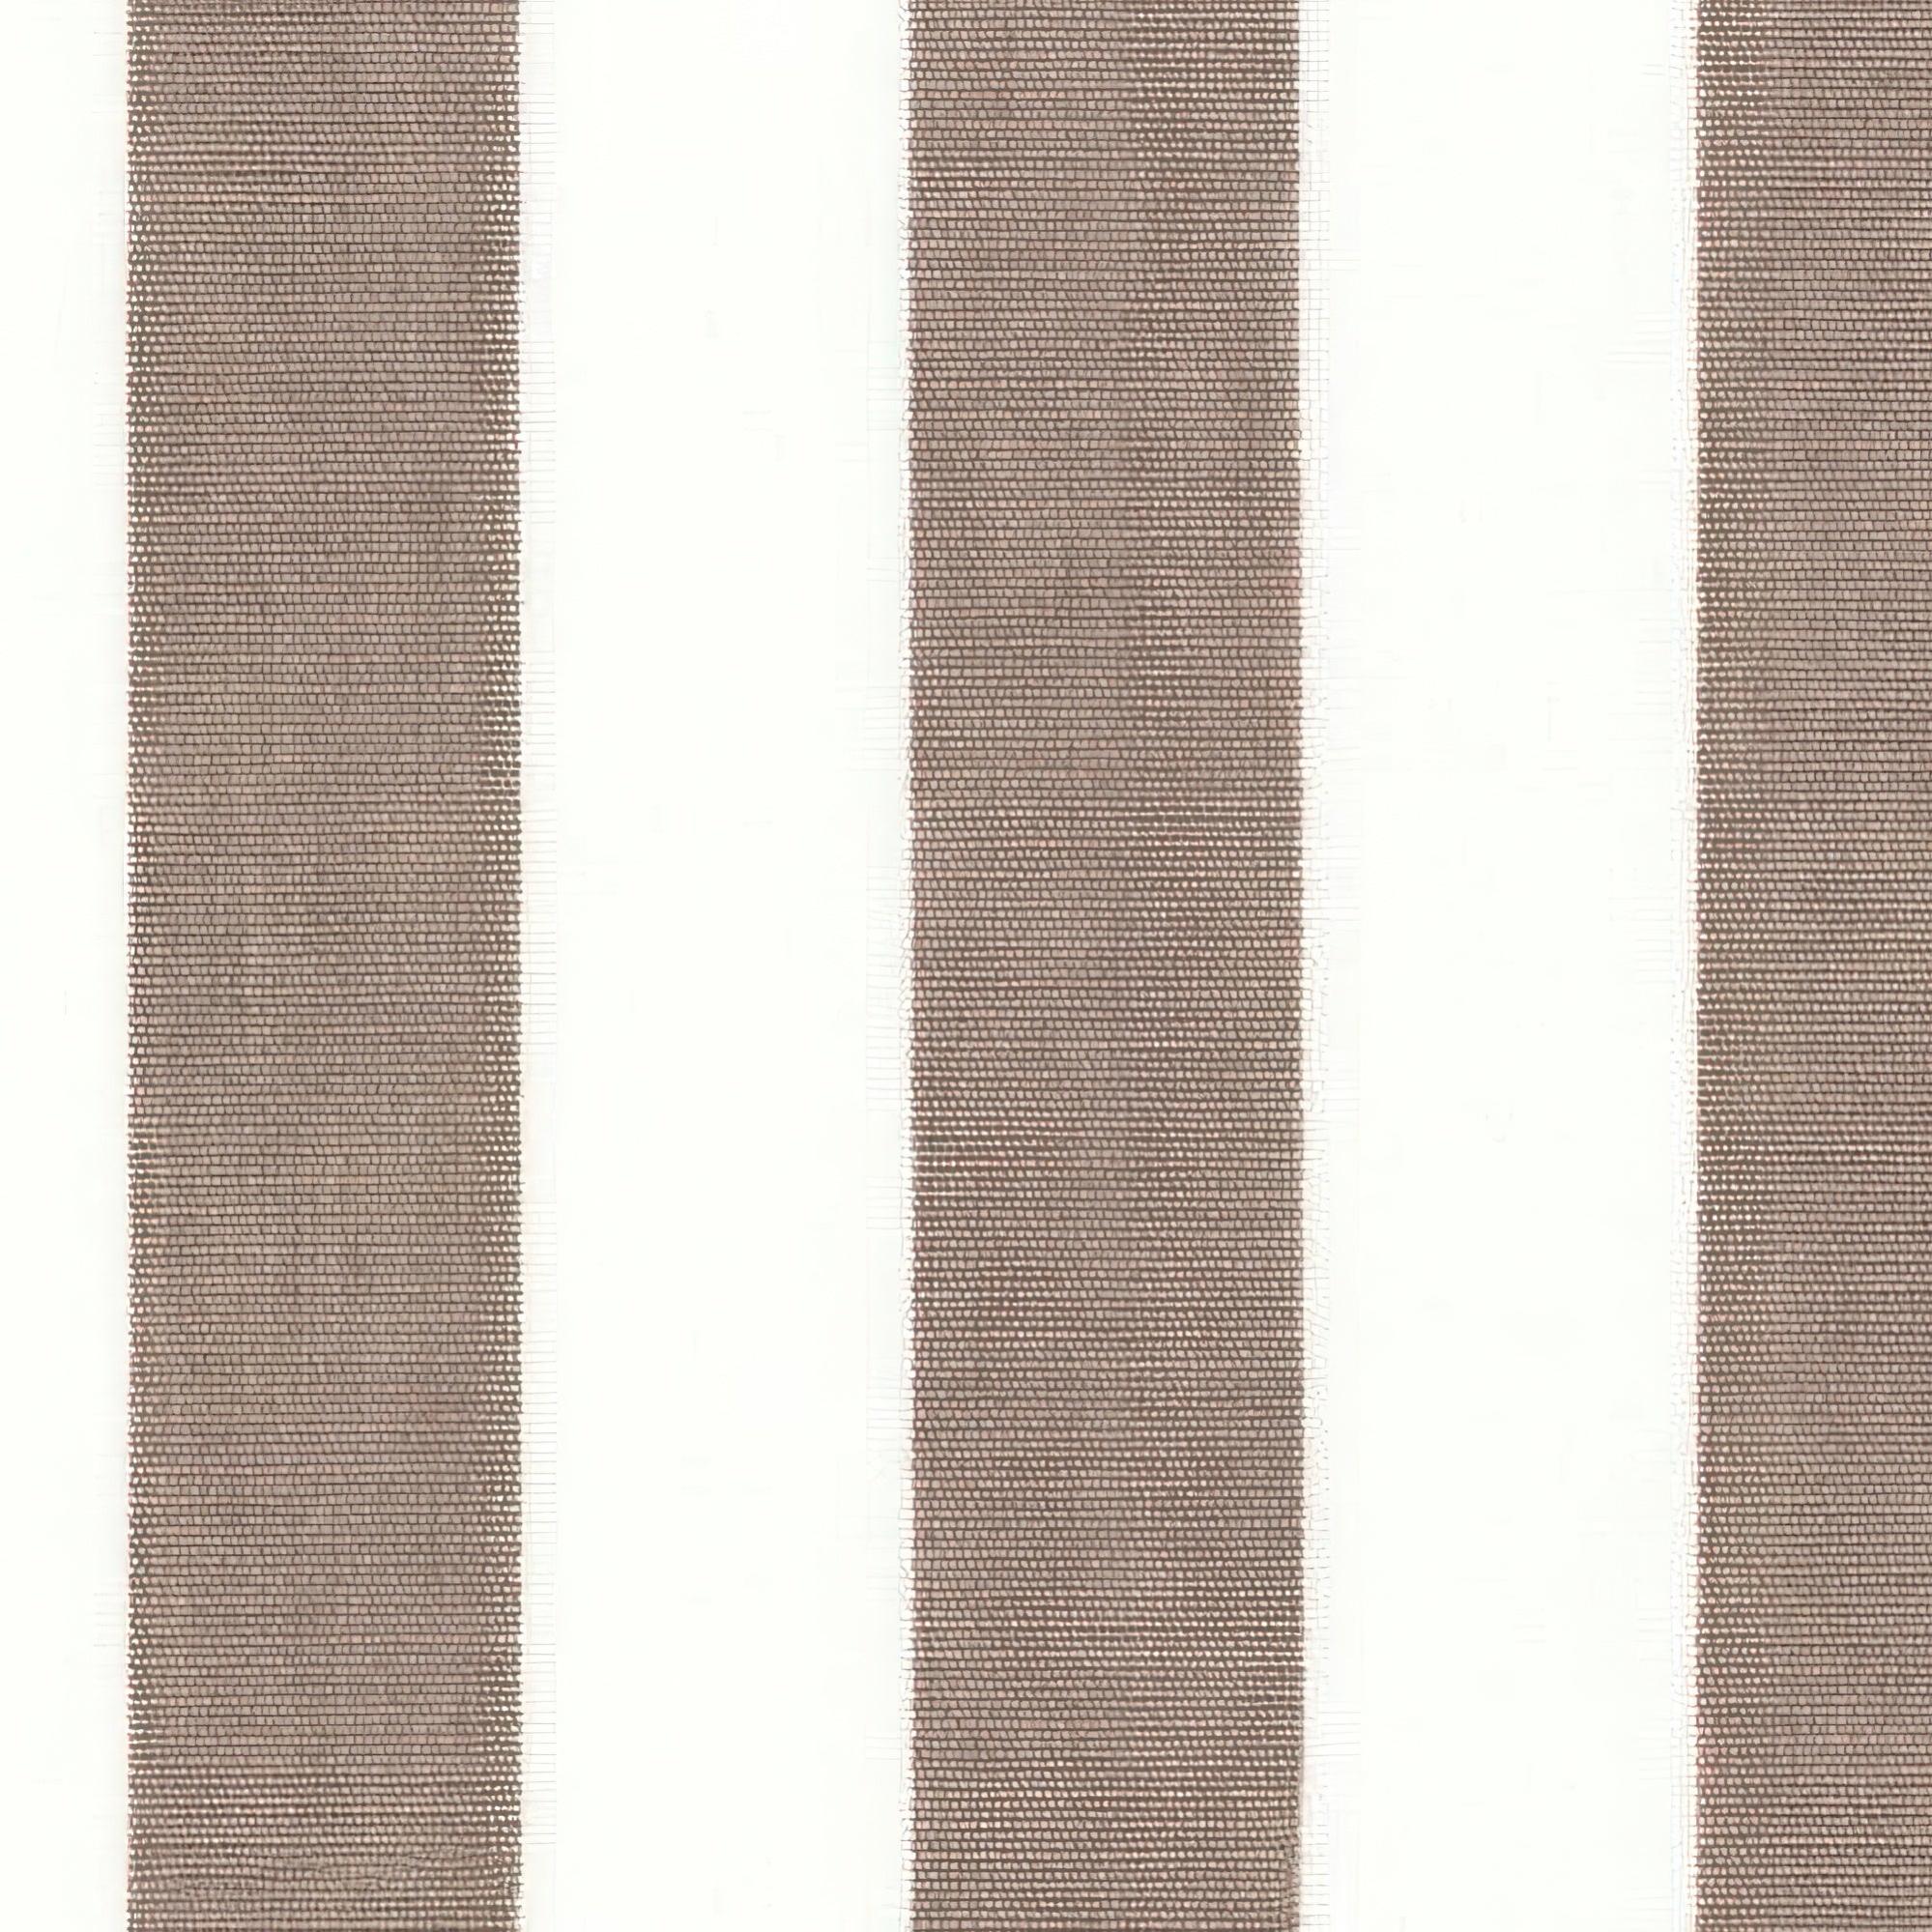 Tela al corte tapicería loneta portals day marron ancho 160 cm de la marca FRANCISCO JOVER